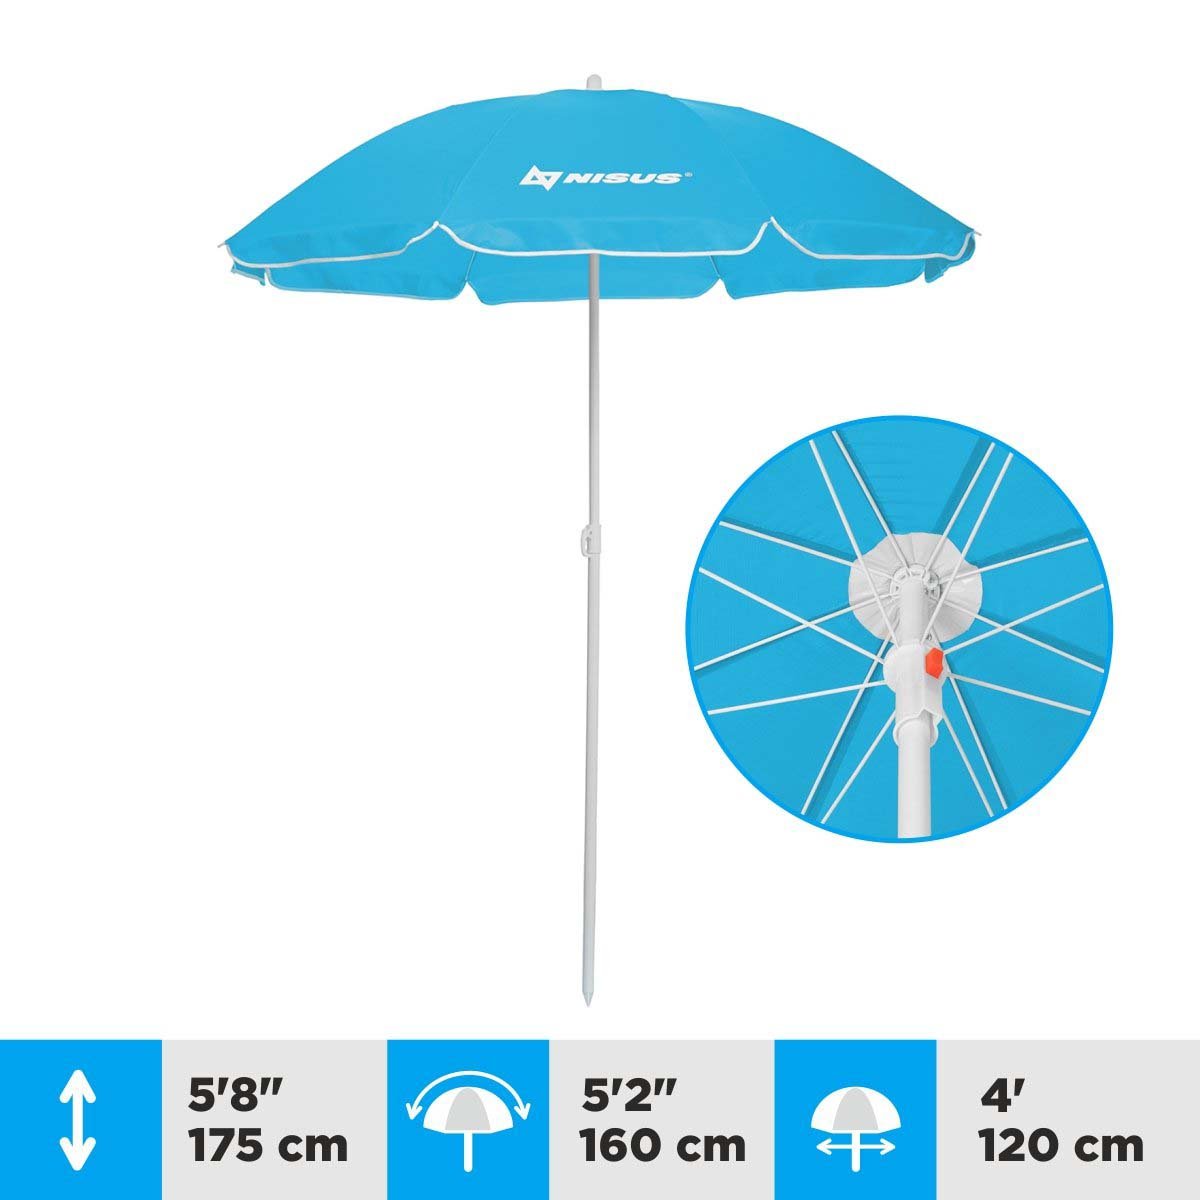 A 4 ft Blue Folding Beach Umbrella is 5.8 ft high